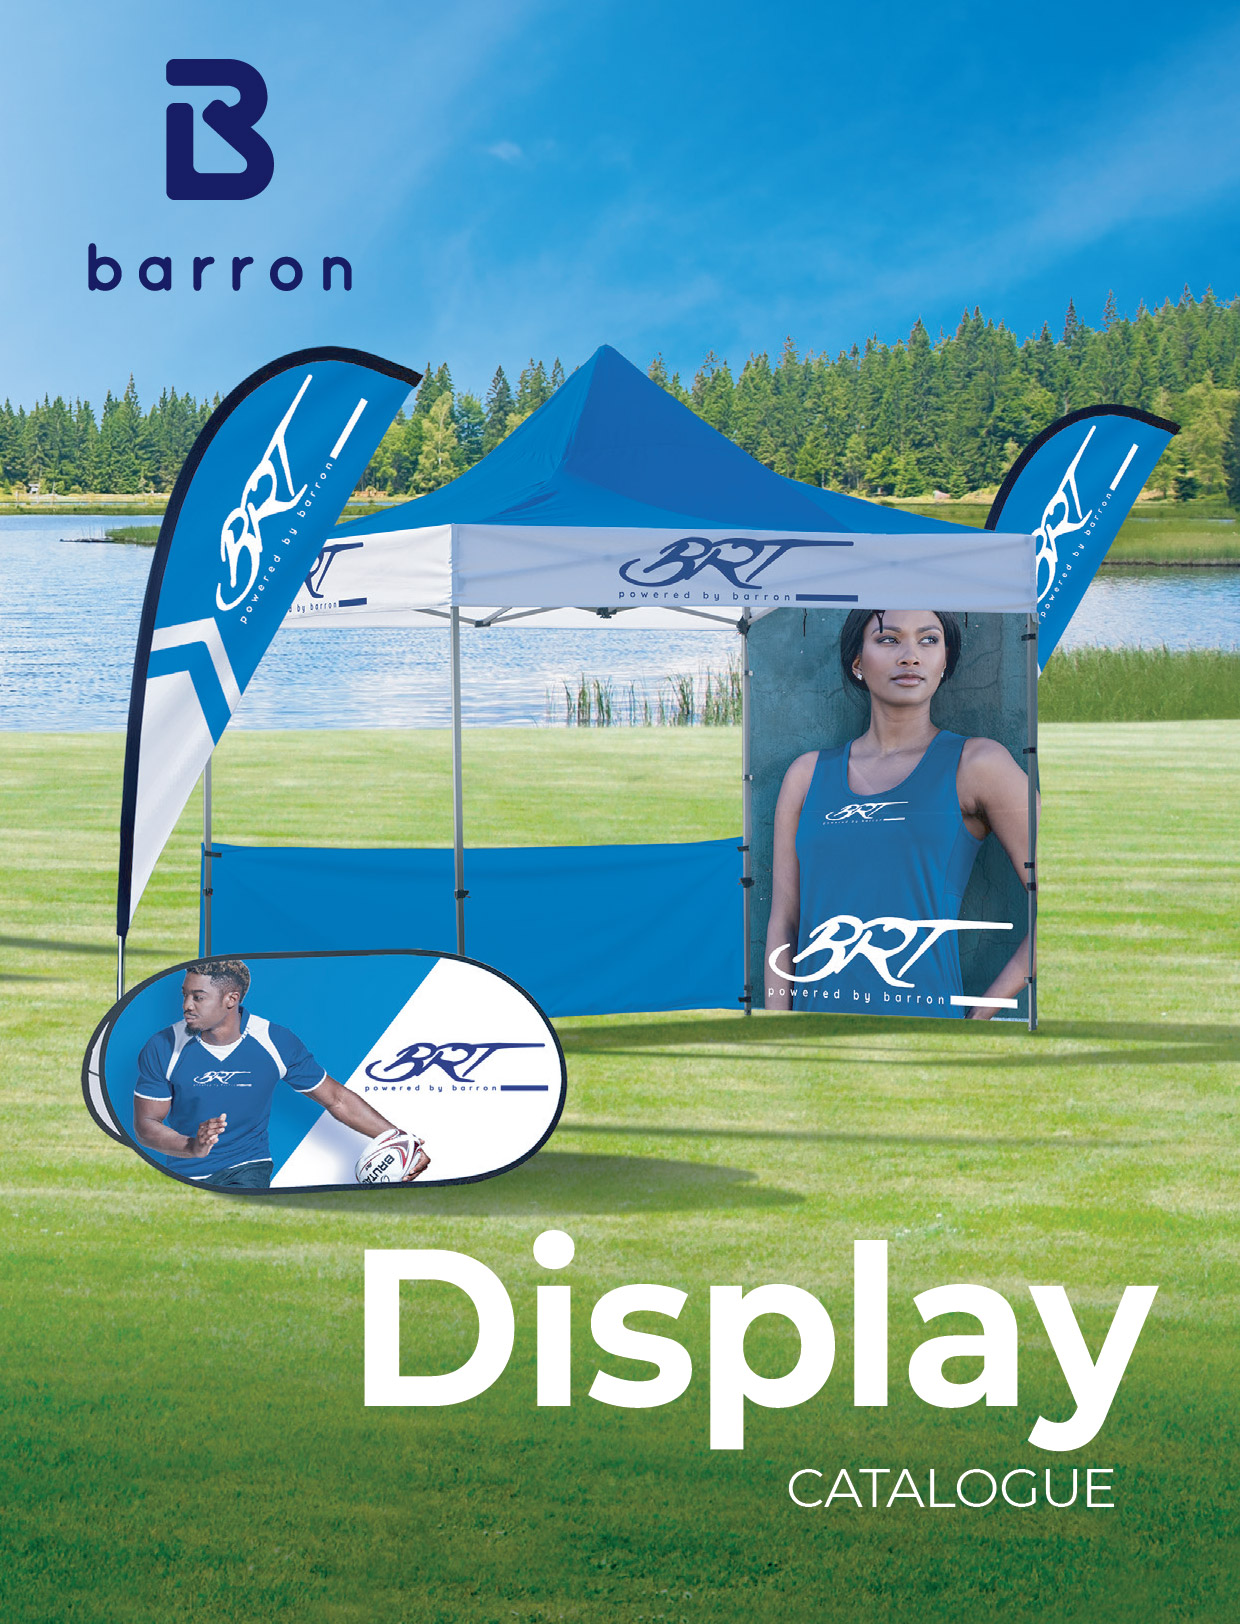 Vision Sports Display Catalogue-01